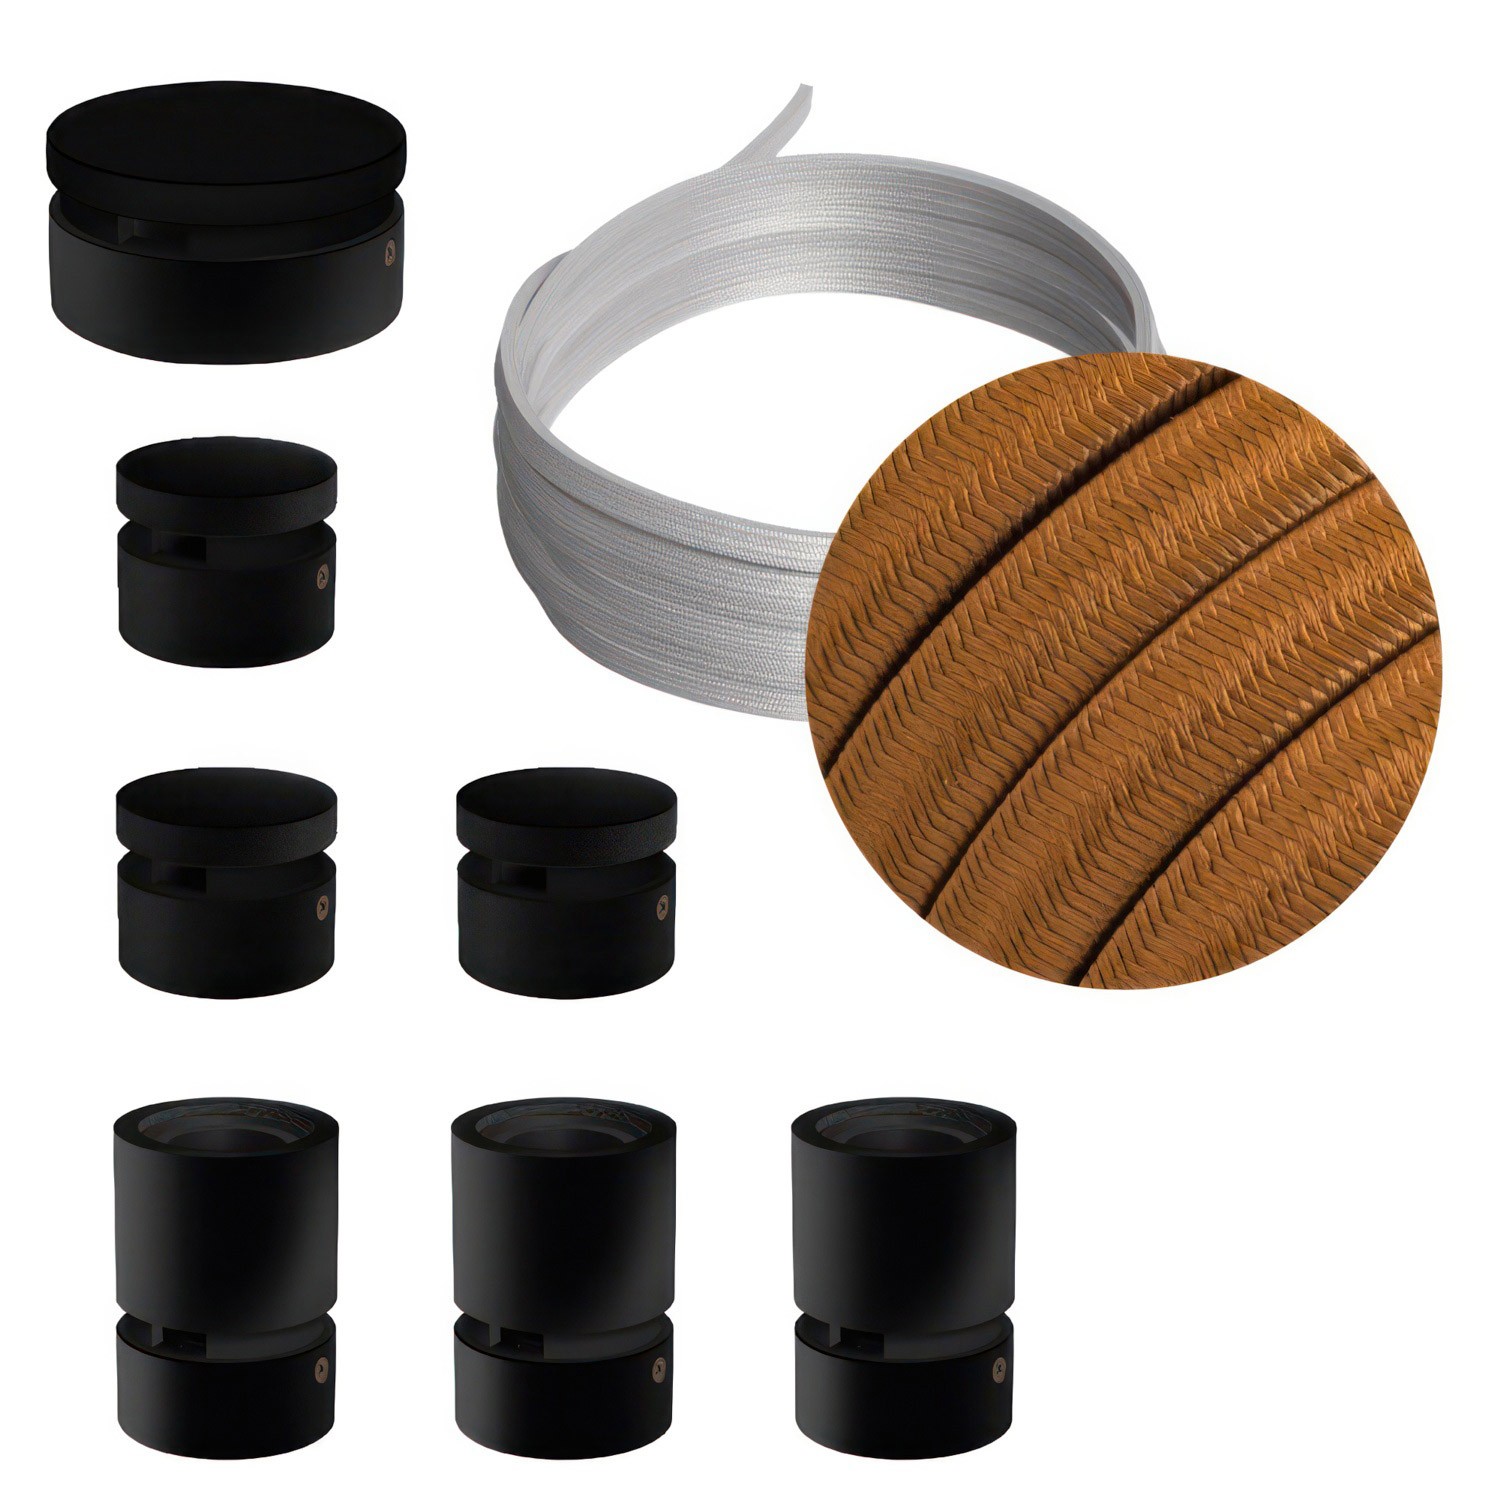 Filé Linear kit systeem - met 5 m. prikkabel voor lichtsnoer en 7 componenten van zwart gelakt hout voor binnenruimtes.